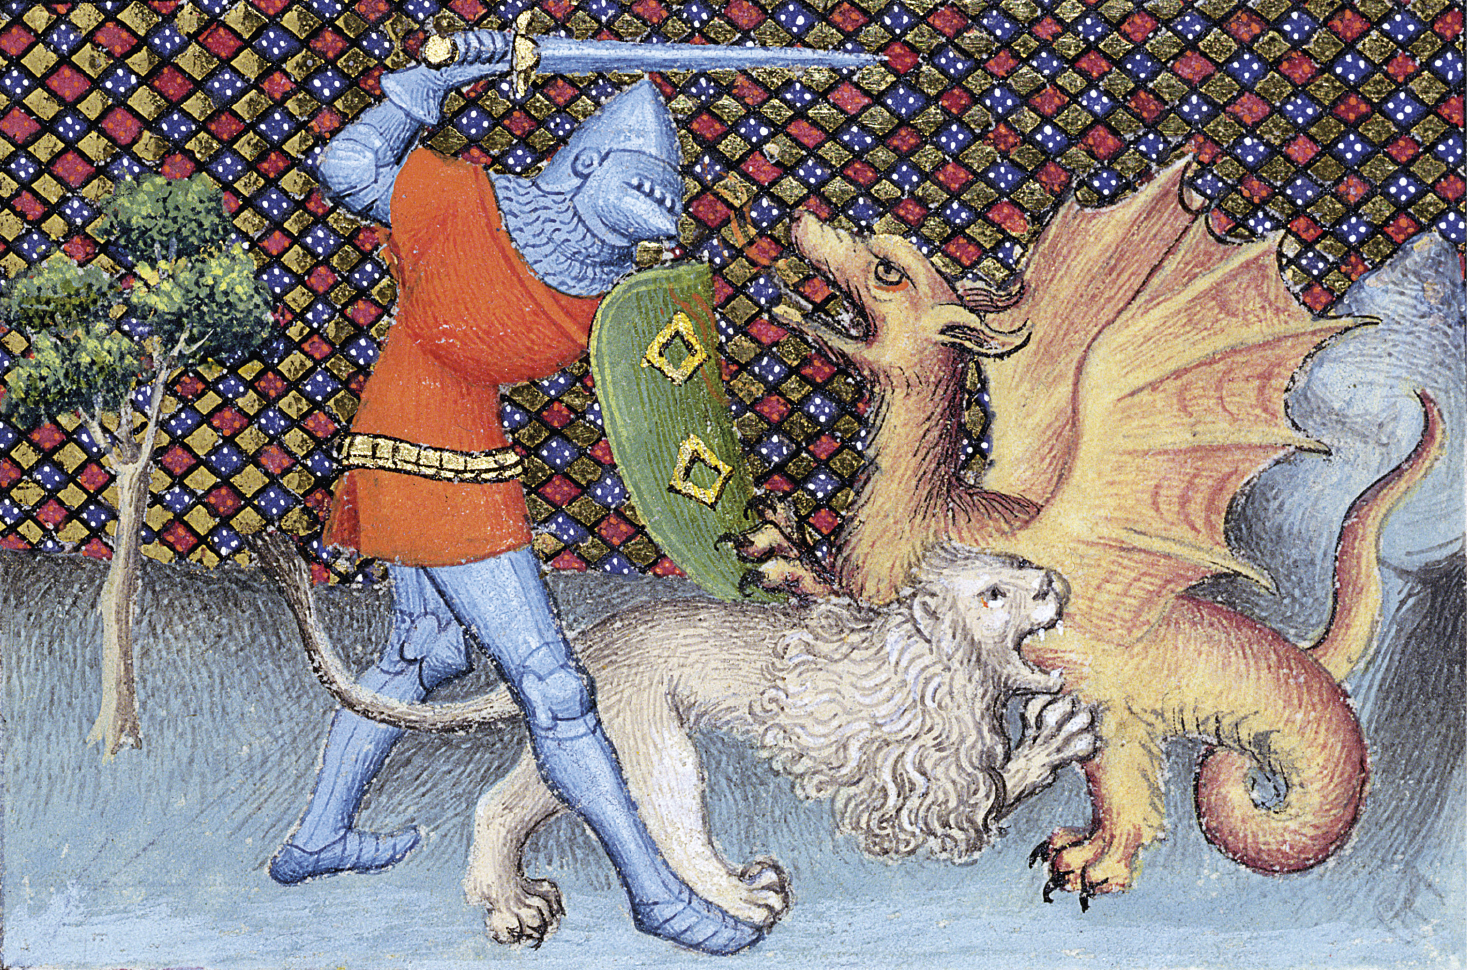 Iluminura. À esquerda, uma pequena árvore e um cavaleiro vestindo uma armadura de metal e uma manta da cor vermelha, segurando um escudo verde numa mão e uma espada na outra. Ele está atacando um dragão, à direita. Abaixo do homem, um leão morde o corpo do dragão. O fundo é quadriculado nas cores azul, vermelho e amarelo.